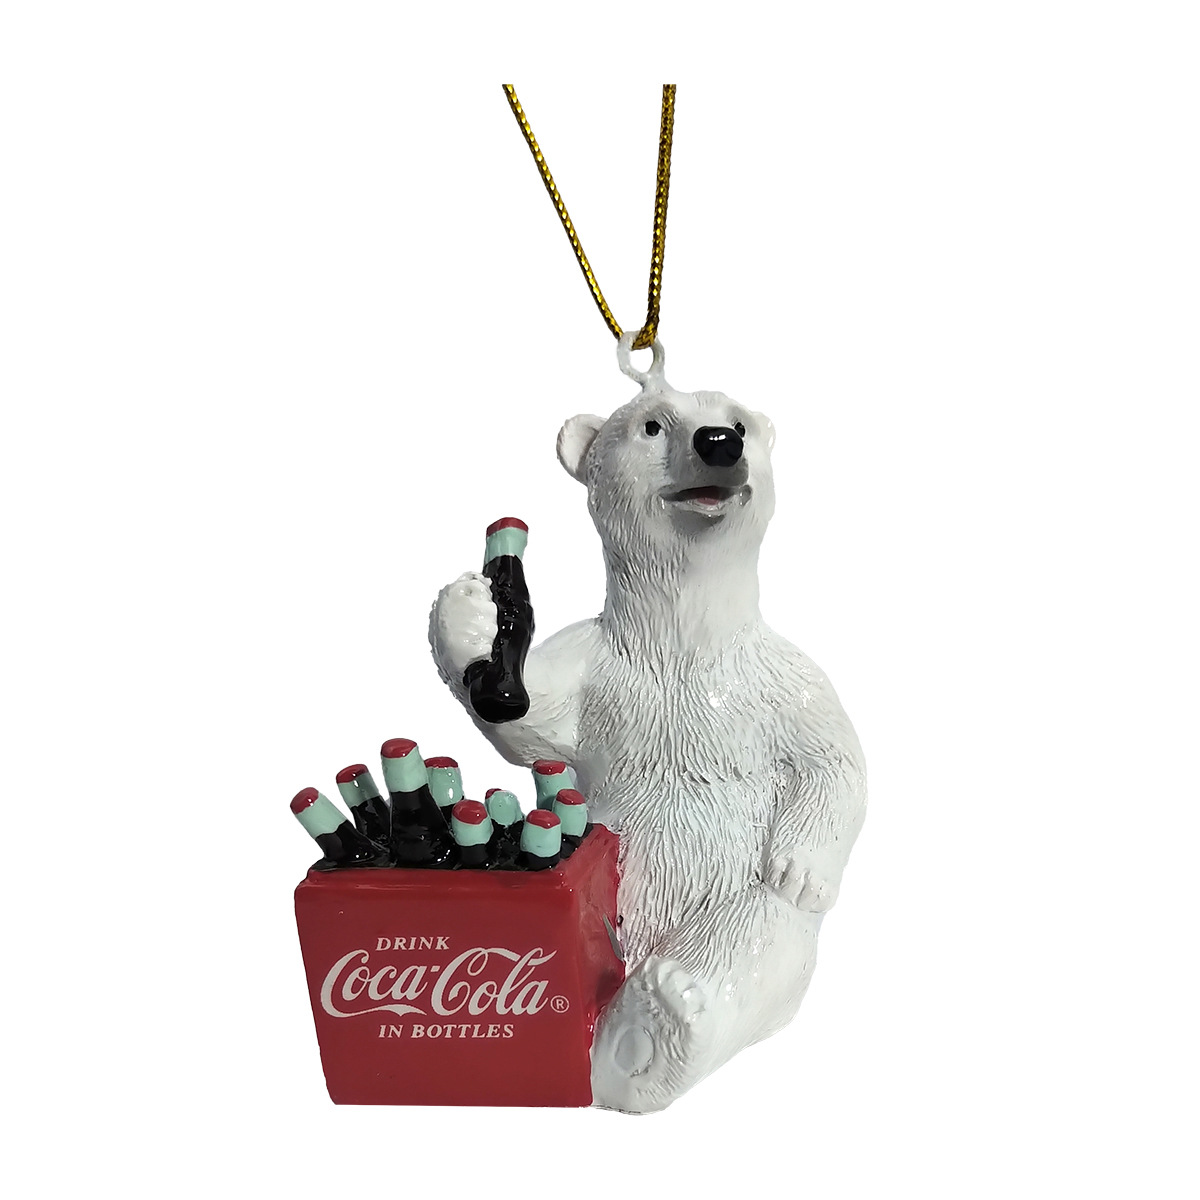 可口可乐北极熊人偶图片